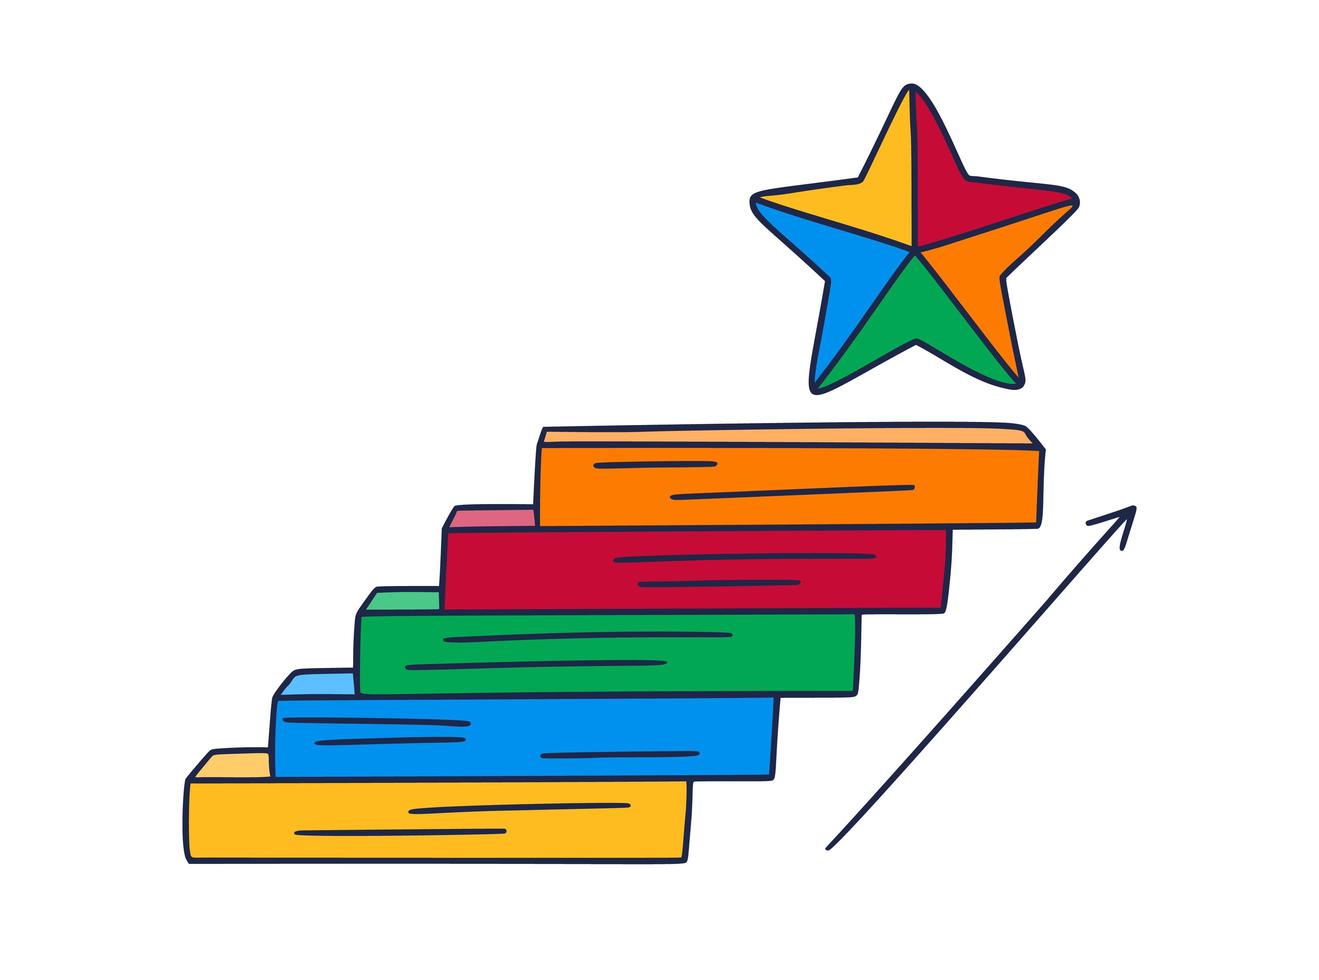 stapt naar de ster. vector doodle illustratie met de hand getekend met stappen of trappen waarop een pictogram van de ster is. het pad naar succes en het bereiken van doelen